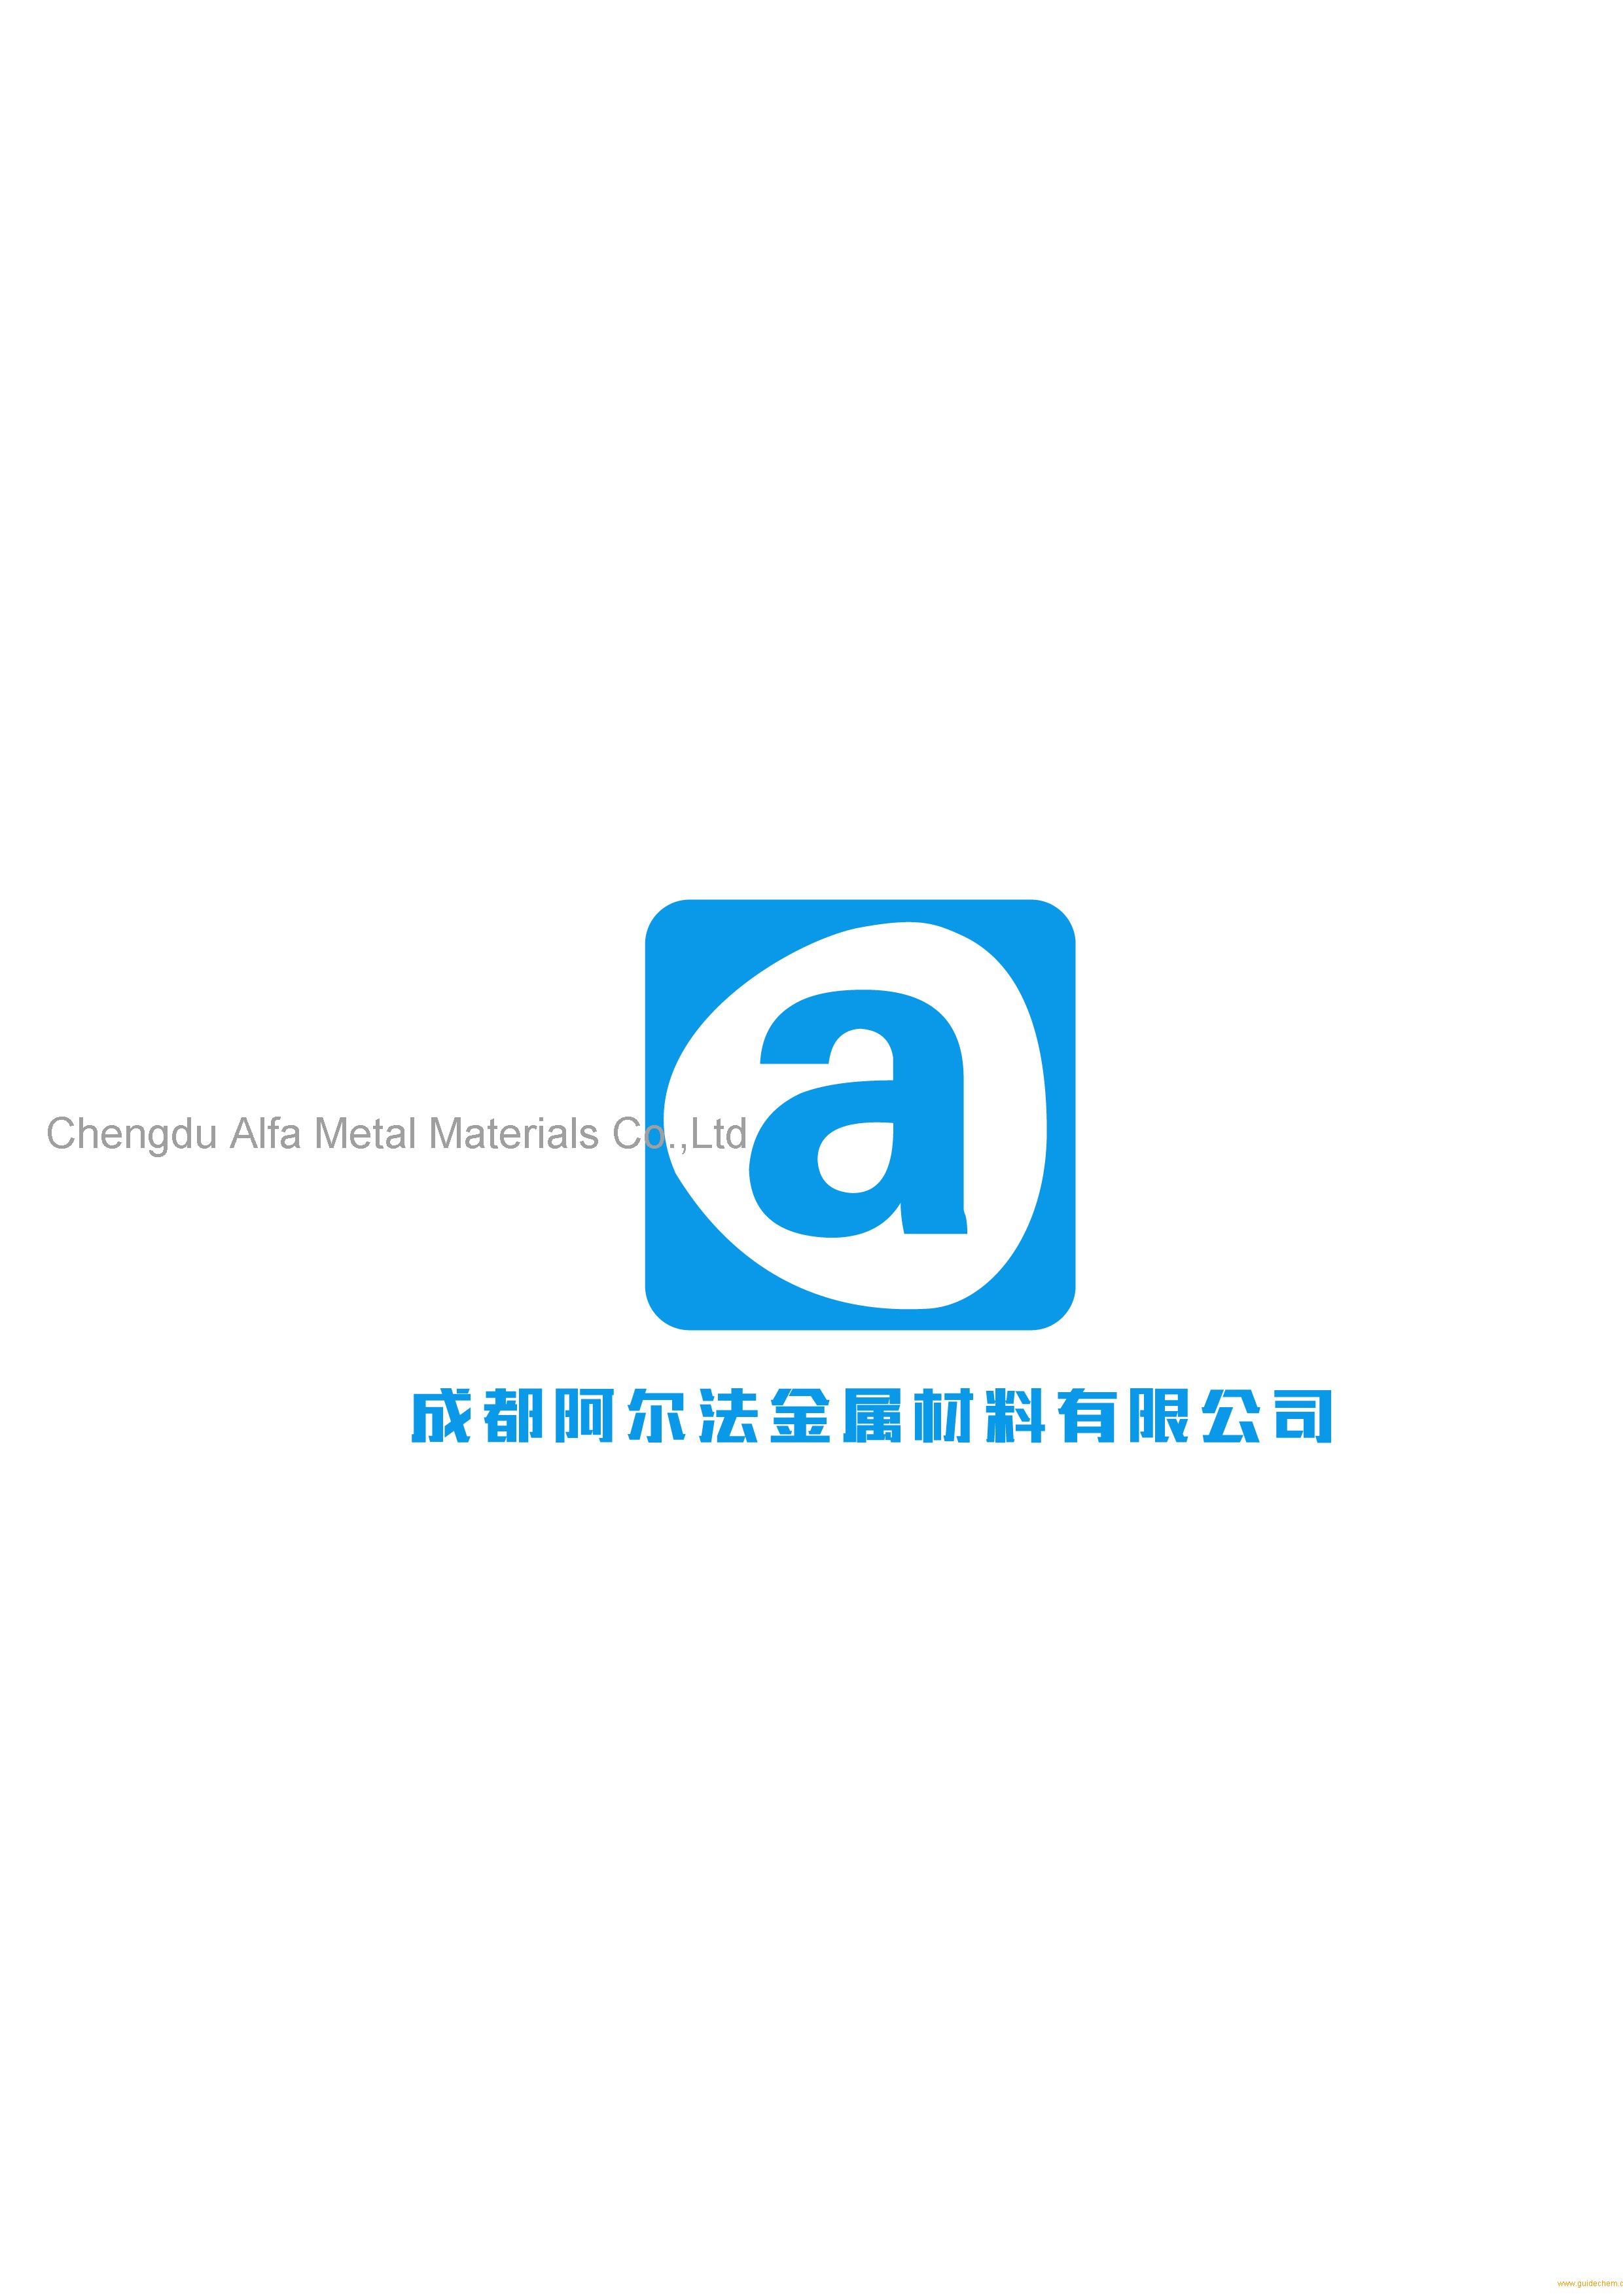 Chengdu Alfa Metal Materials Co.,Ltd